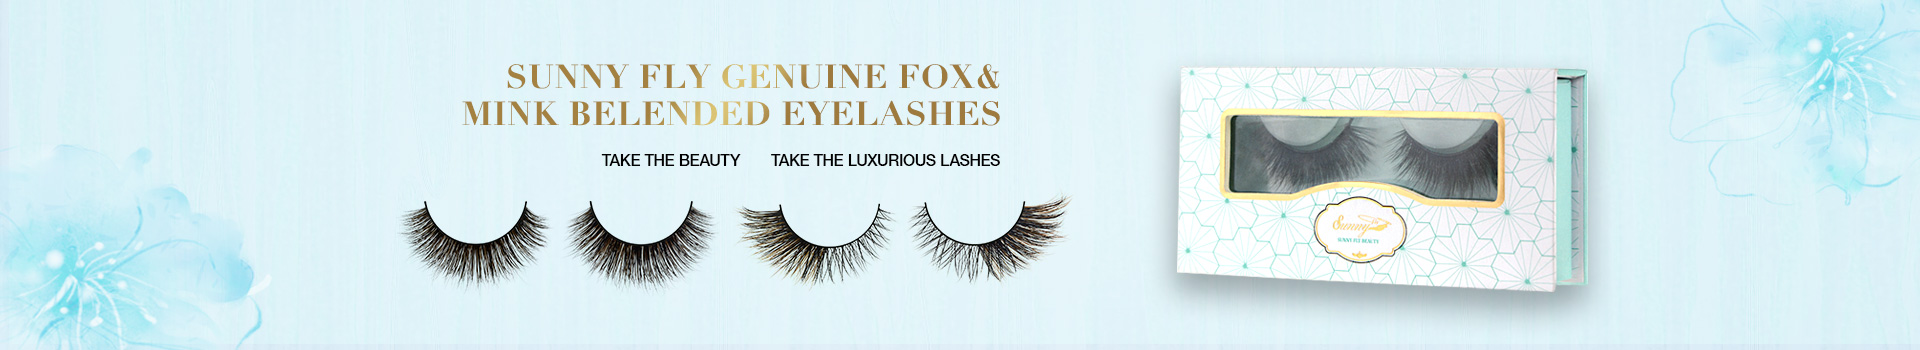 Fox & Mink Fur Blended Eyelashes FMB09